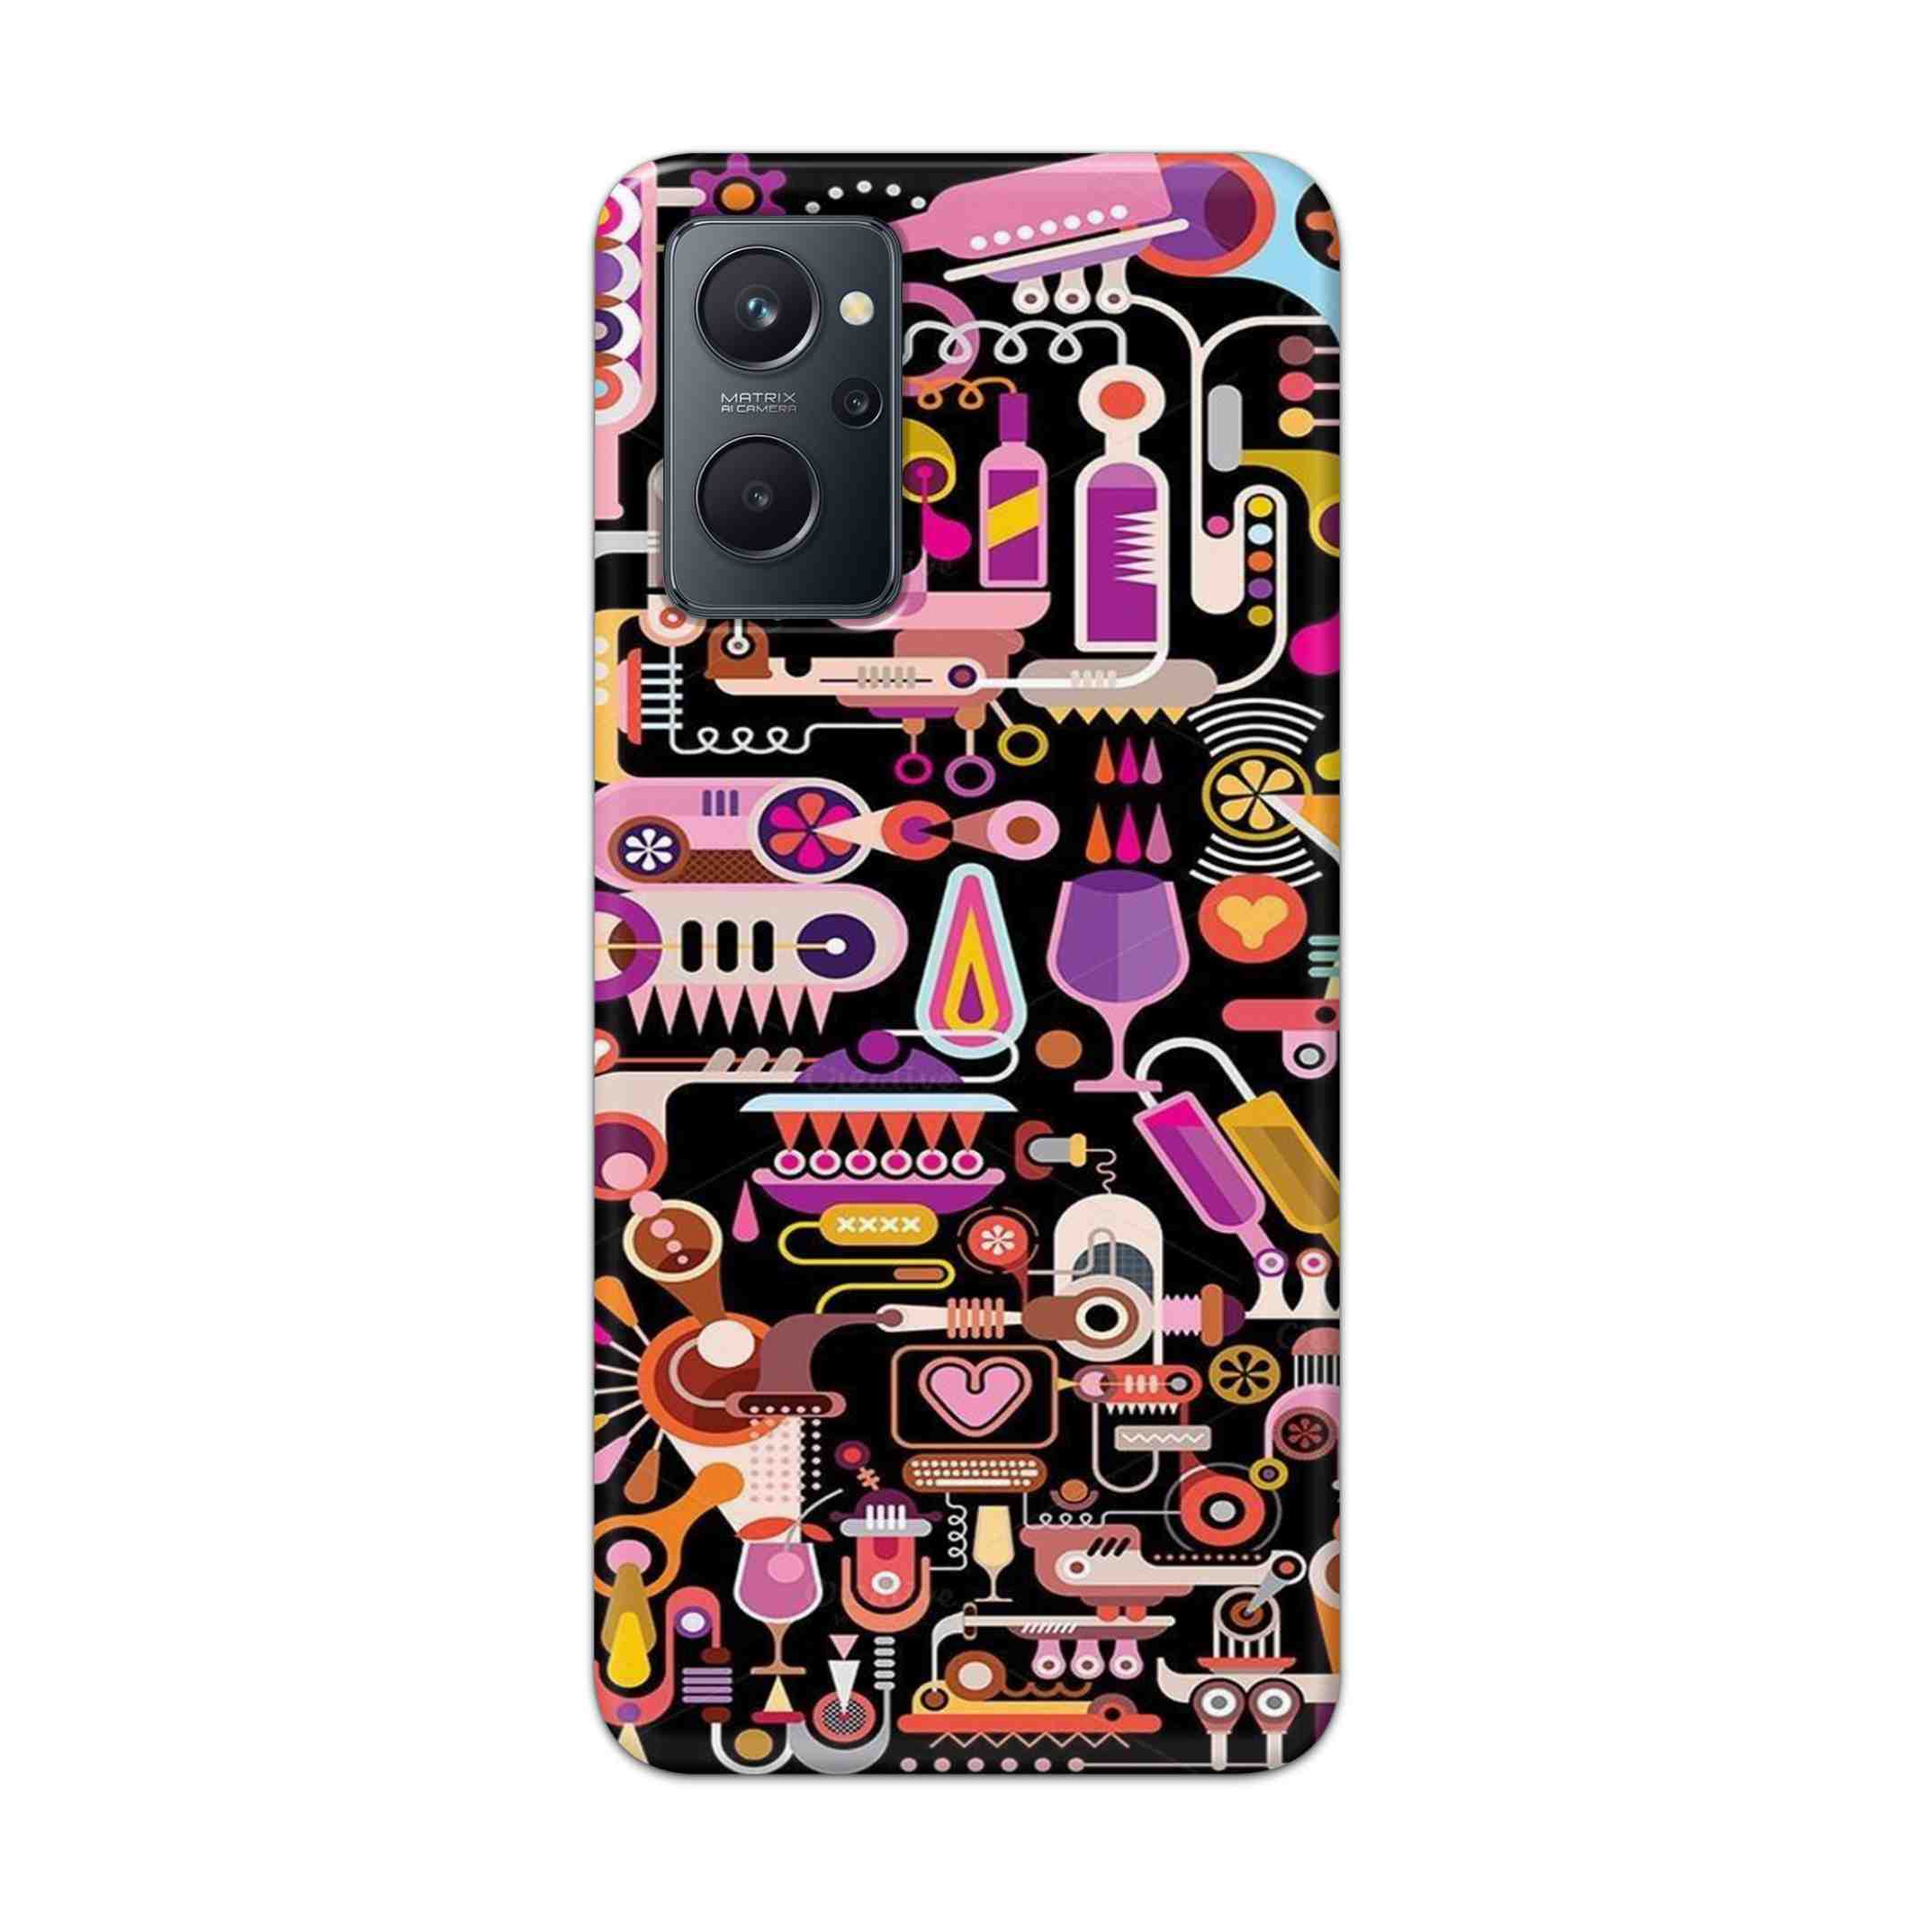 Buy Lab Art Hard Back Mobile Phone Case Cover For Realme 9i Online